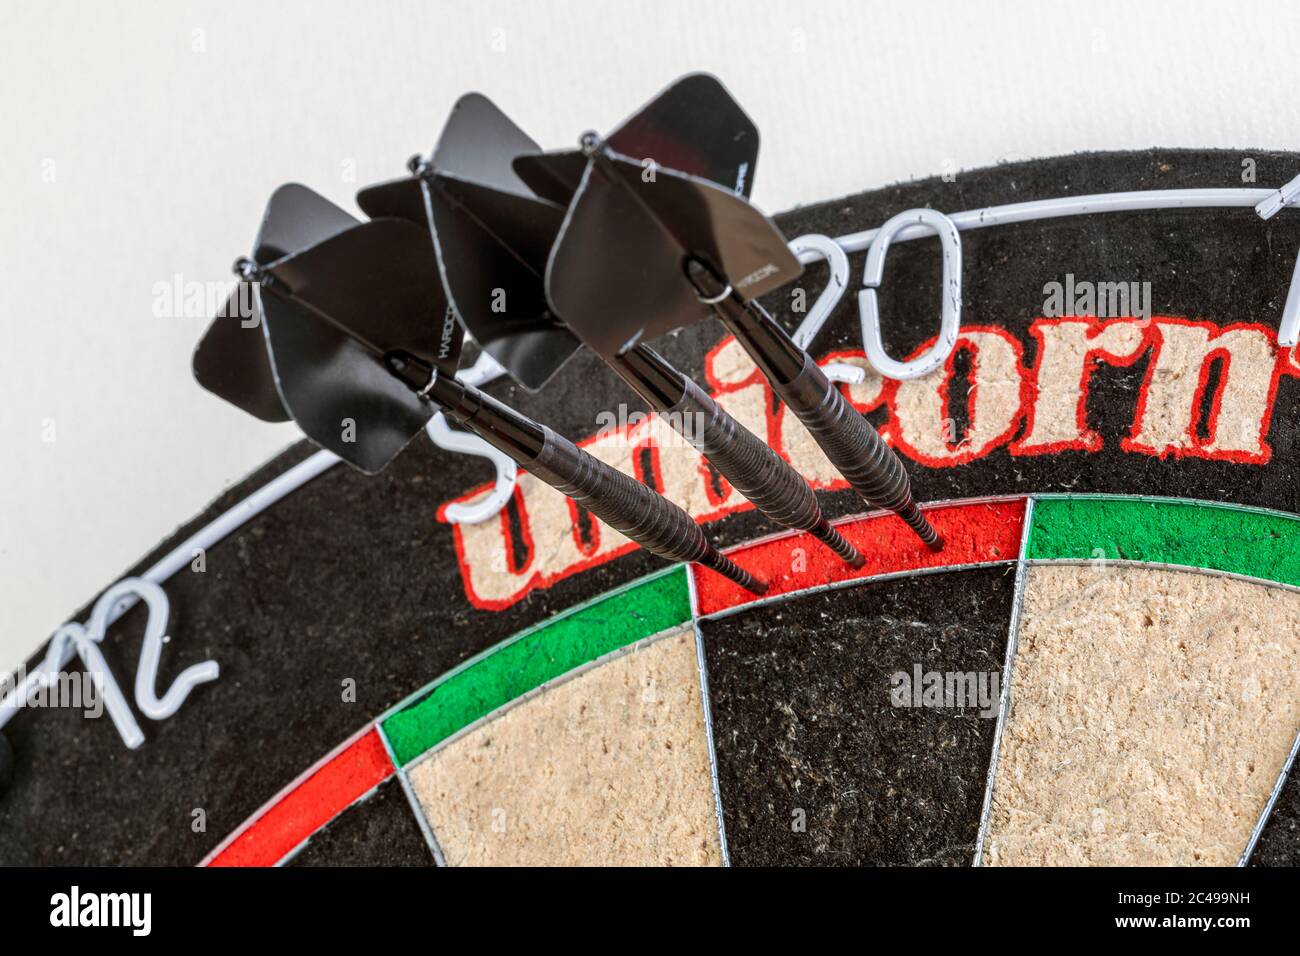 Drei Darts in Doppel-zwanzig auf einer Dartscheibe Stockfotografie - Alamy